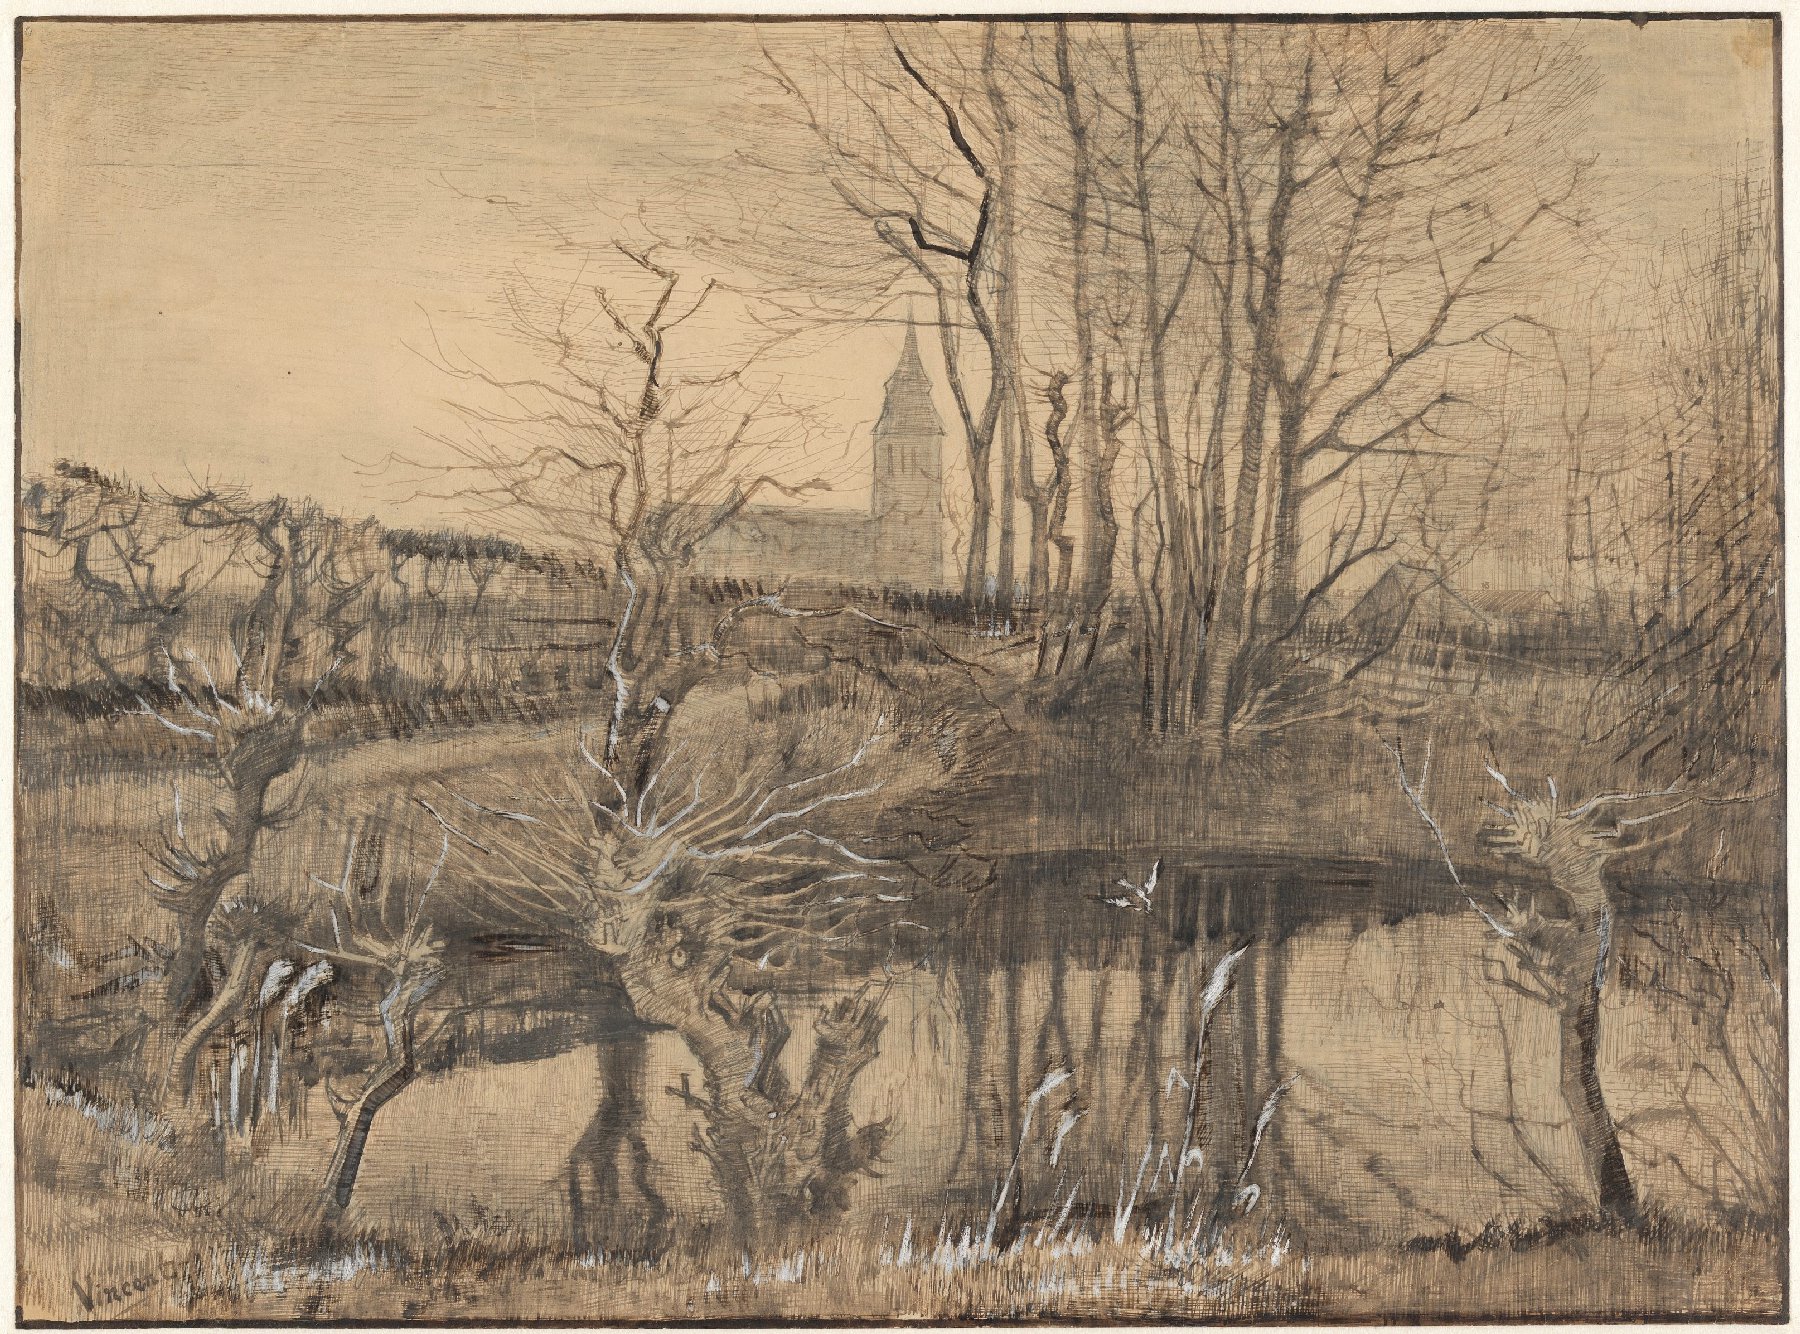 De ijsvogel Vincent van Gogh (1853 - 1890), Nuenen, maart 1884